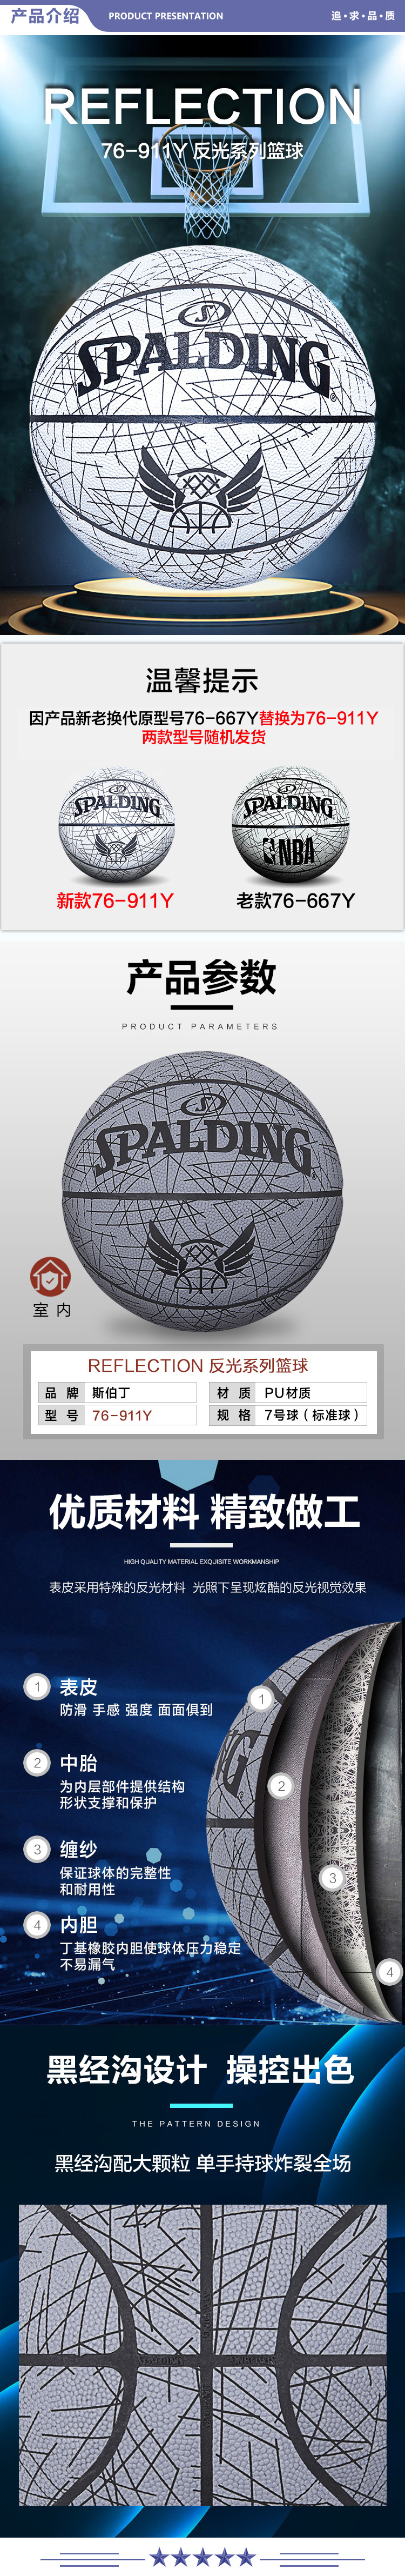 斯伯丁 76-667Y SPALDING 反光系列篮球 Reflection 室内用PU材质 7号球 2.jpg